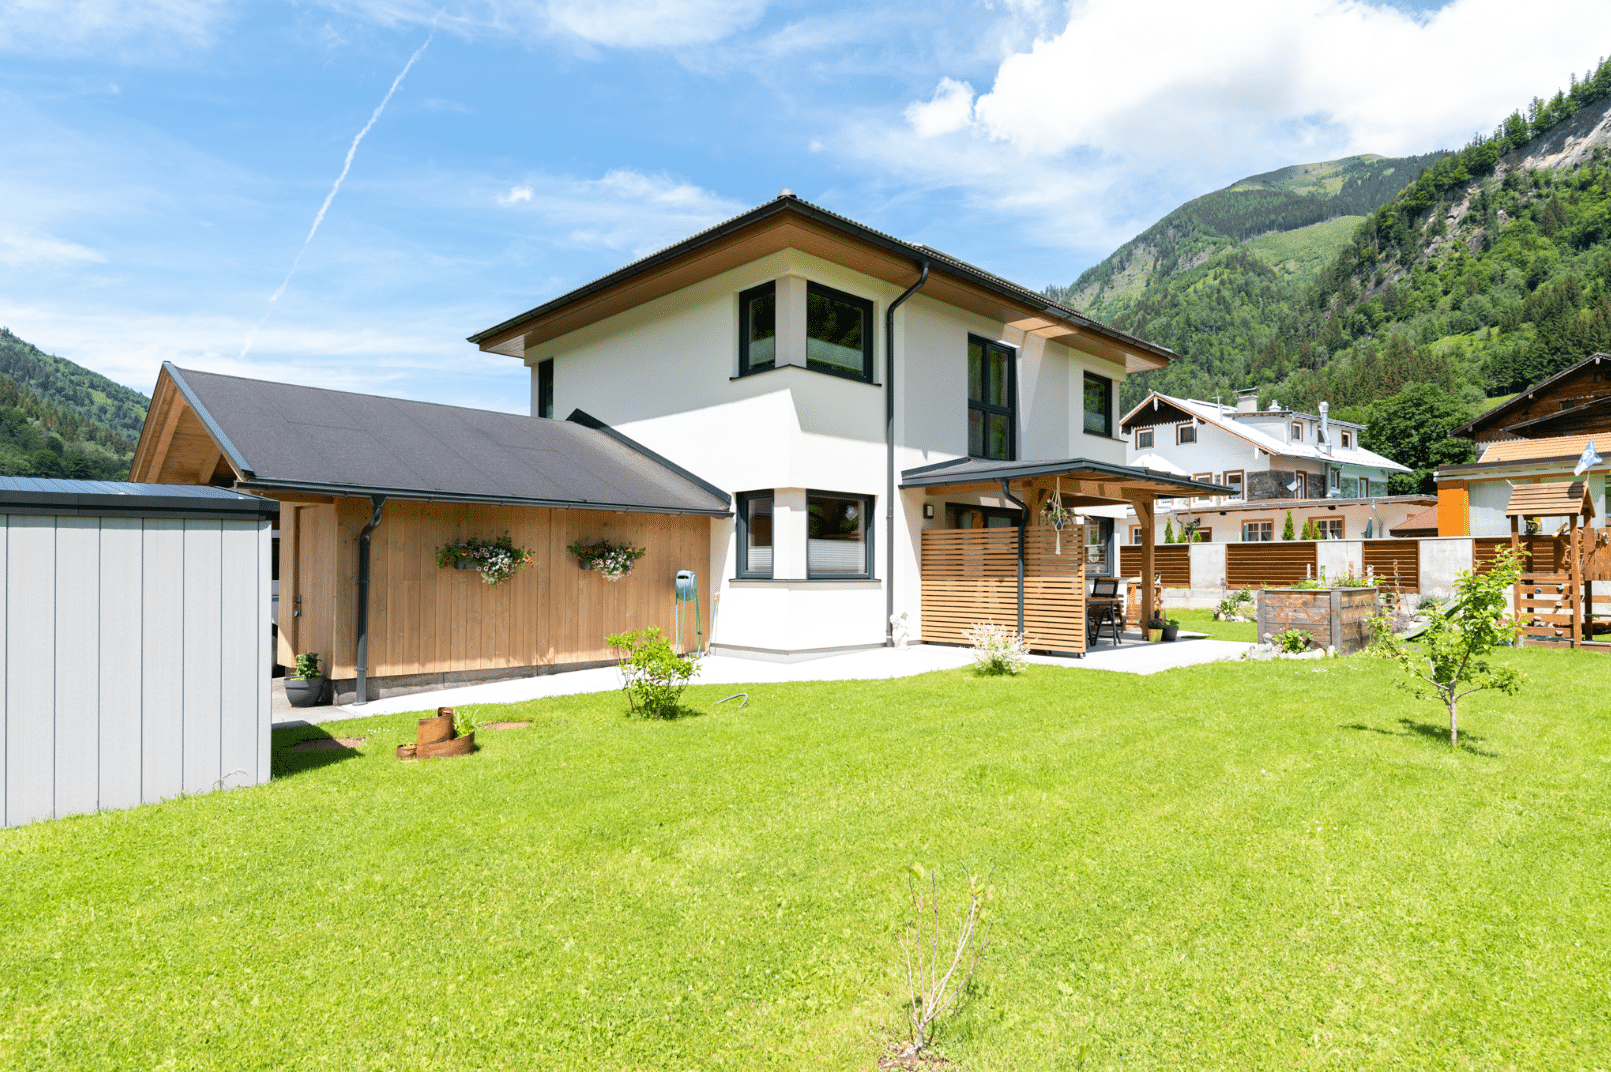 Hartl Haus zeigt ein helles Einfamilienhaus im Grünen, mit einem Spielplatz aus Holz, einem Hochbeet, überdachter Terrasse und einem Carport.